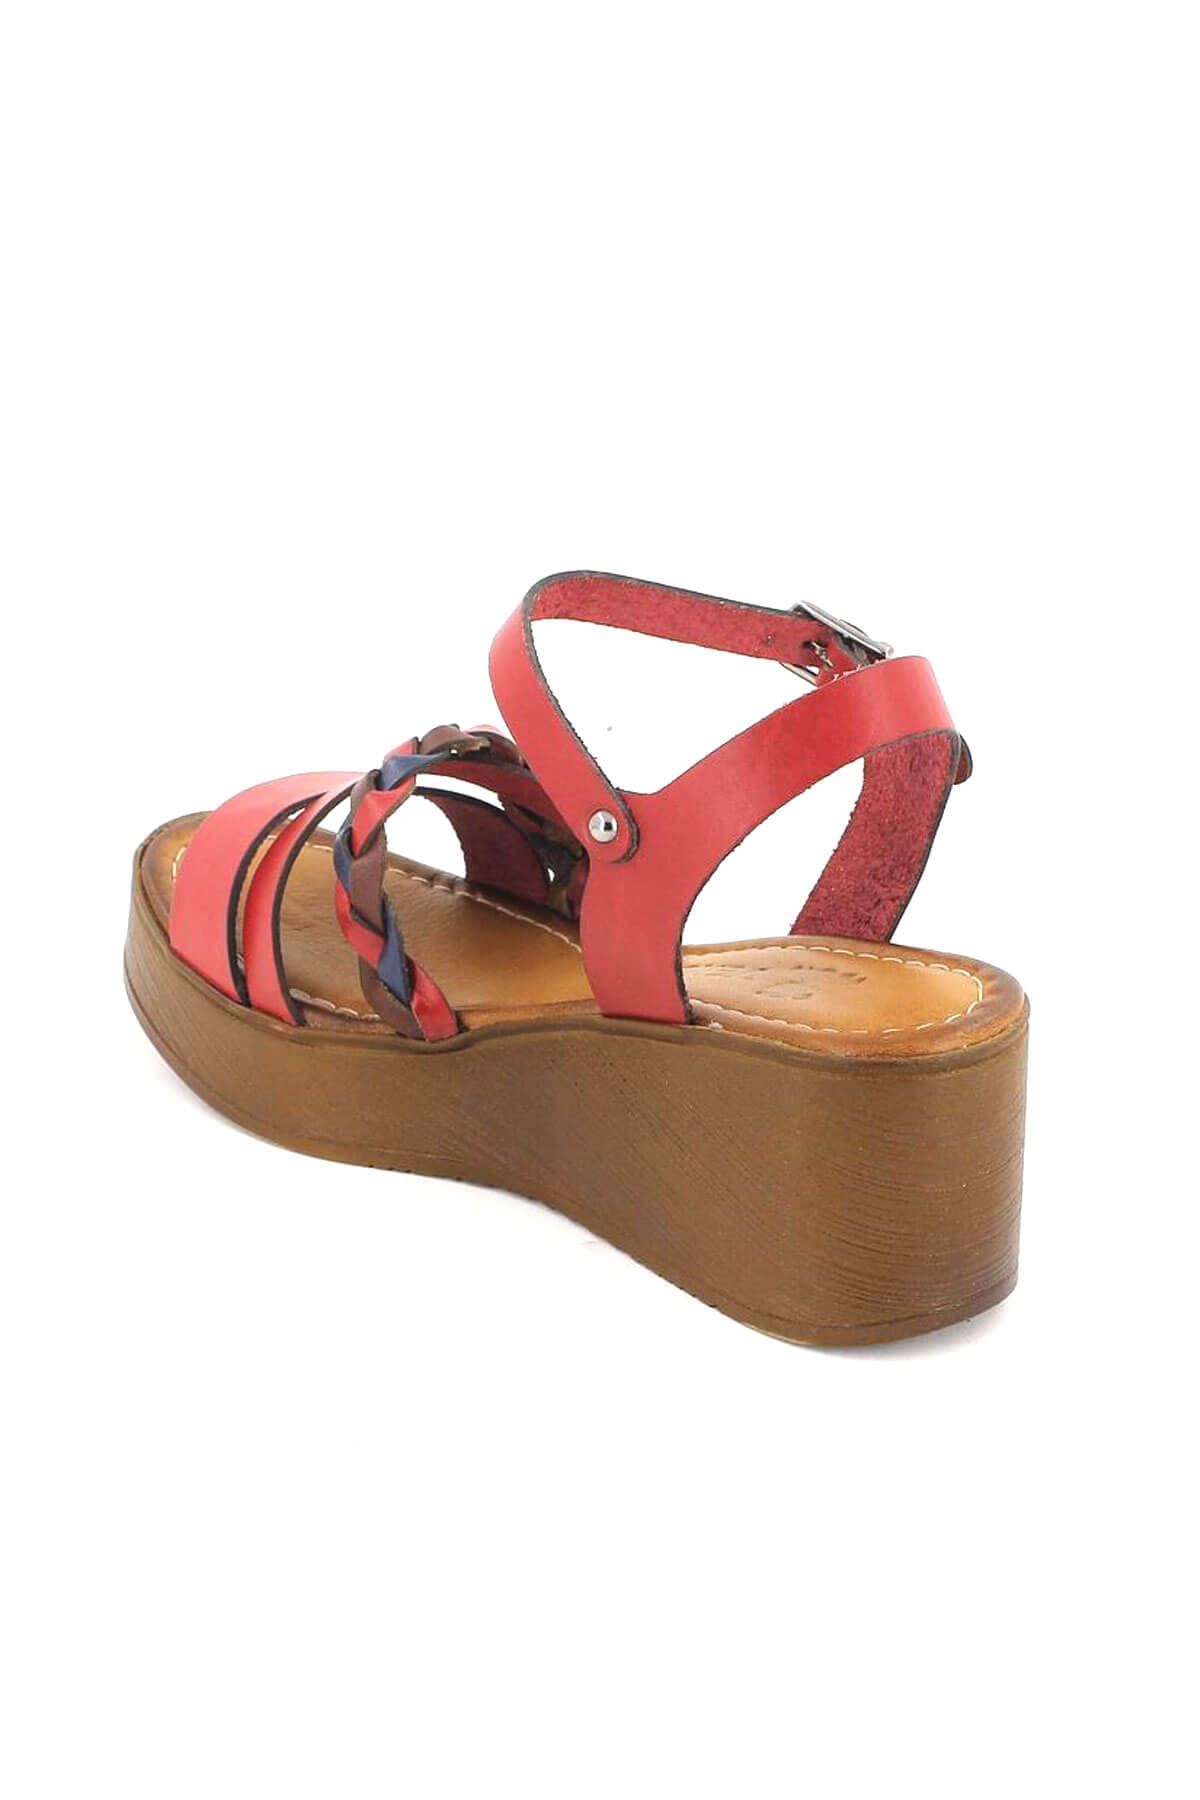 Kadın Deri Dolgu Topuk Sandalet Kırmızı 21983400 - Thumbnail